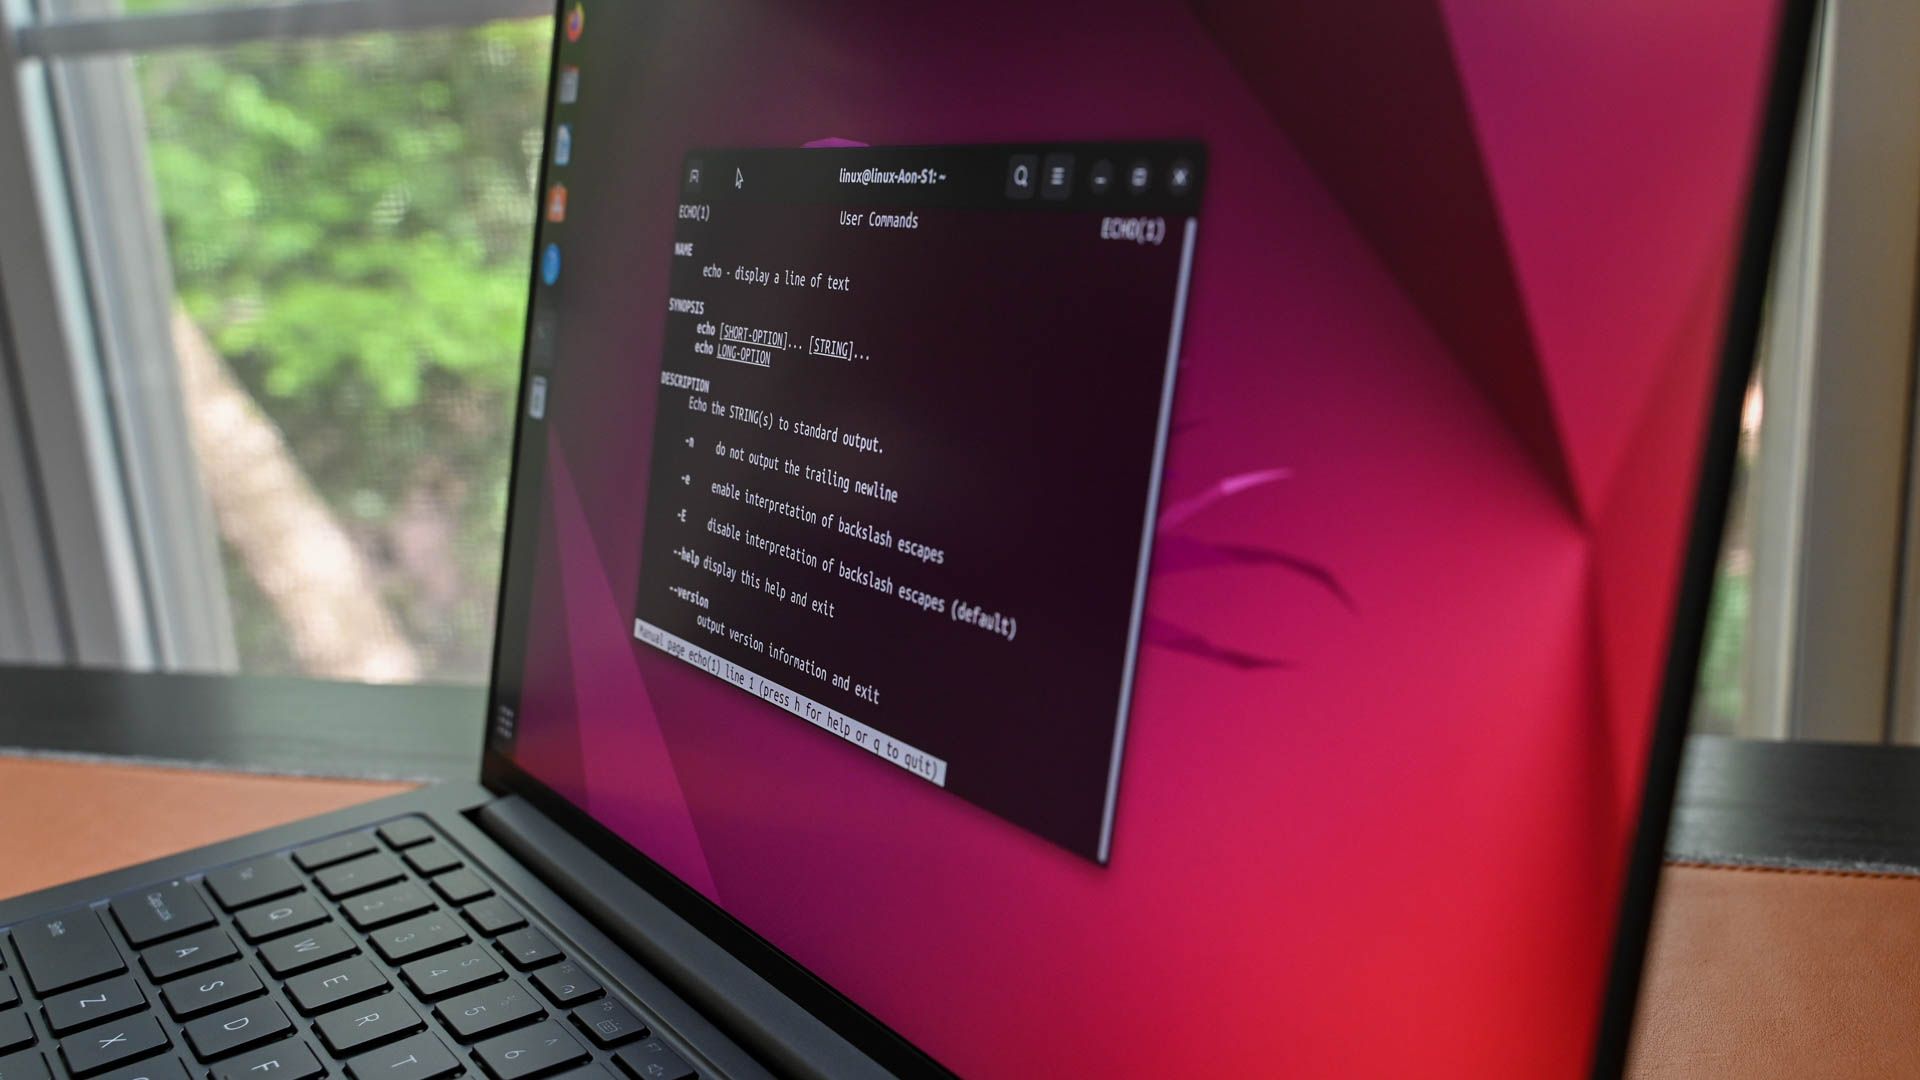 A terminal window open on Ubuntu. 